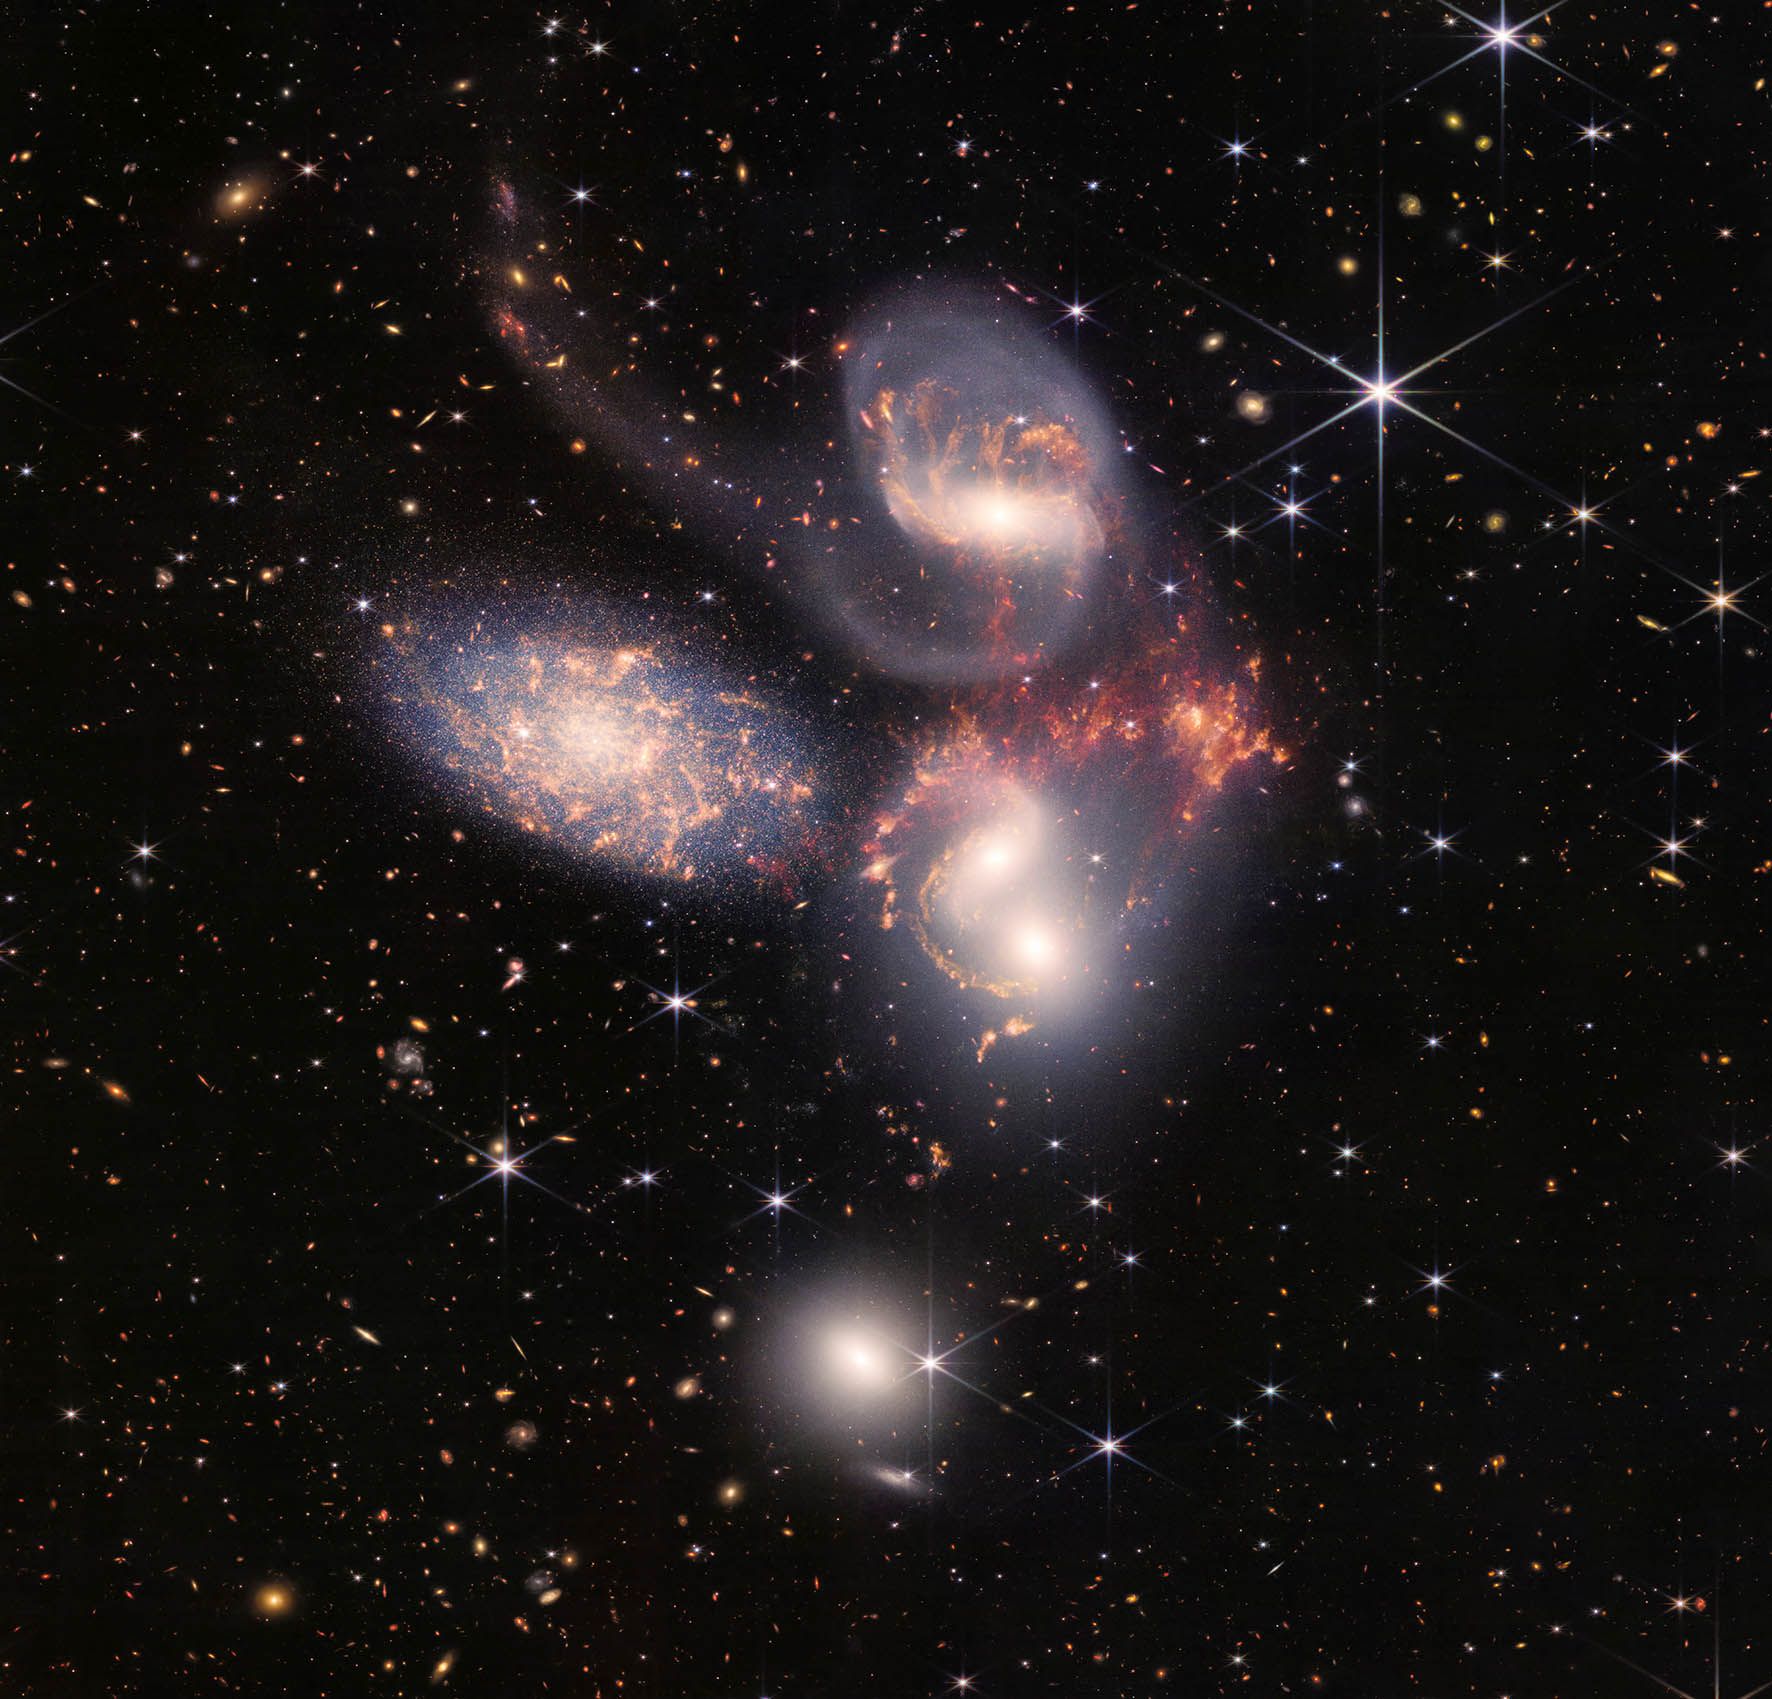 Las increíbles imágenes de la Galaxia Rueda captadas por la NASA